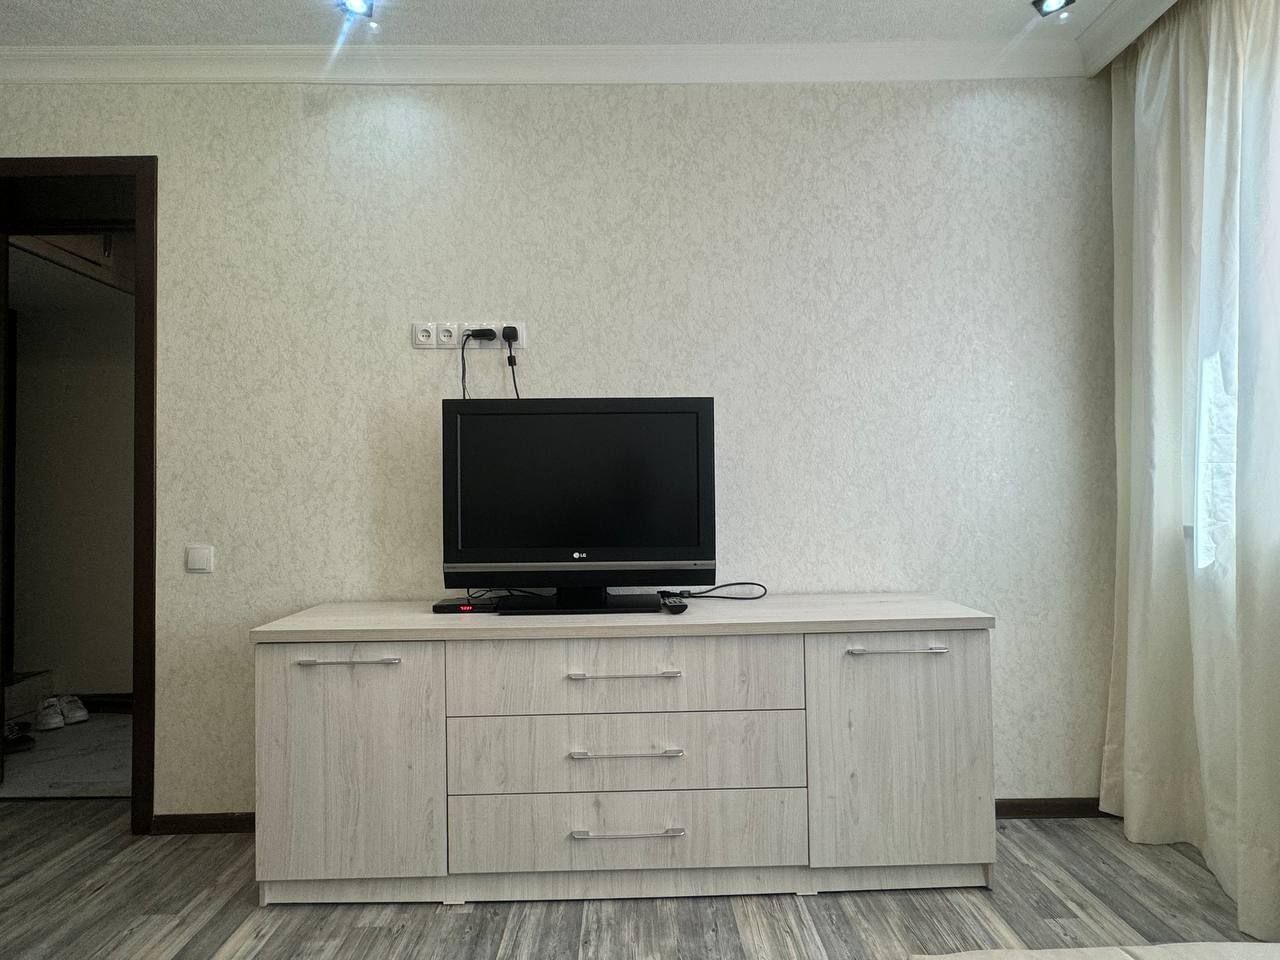 Продаётся 1-комнатная квартира с хорошим ремонтом на Новомосковской